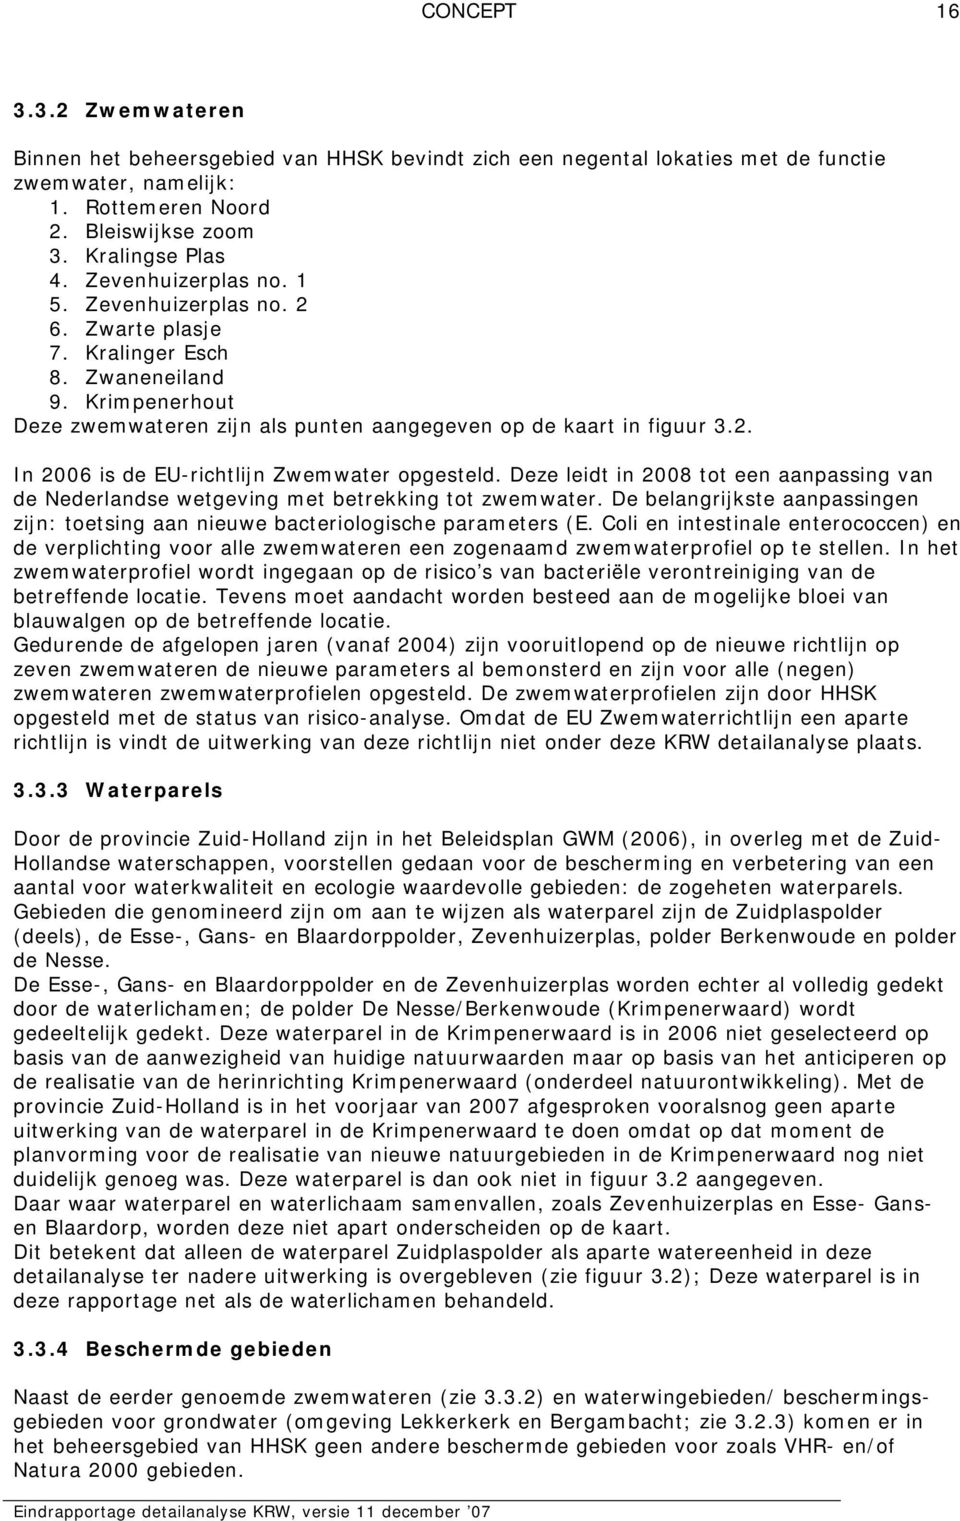 Deze leidt in 2008 tot een aanpassing van de Nederlandse wetgeving met betrekking tot zwemwater. De belangrijkste aanpassingen zijn: toetsing aan nieuwe bacteriologische parameters (E.